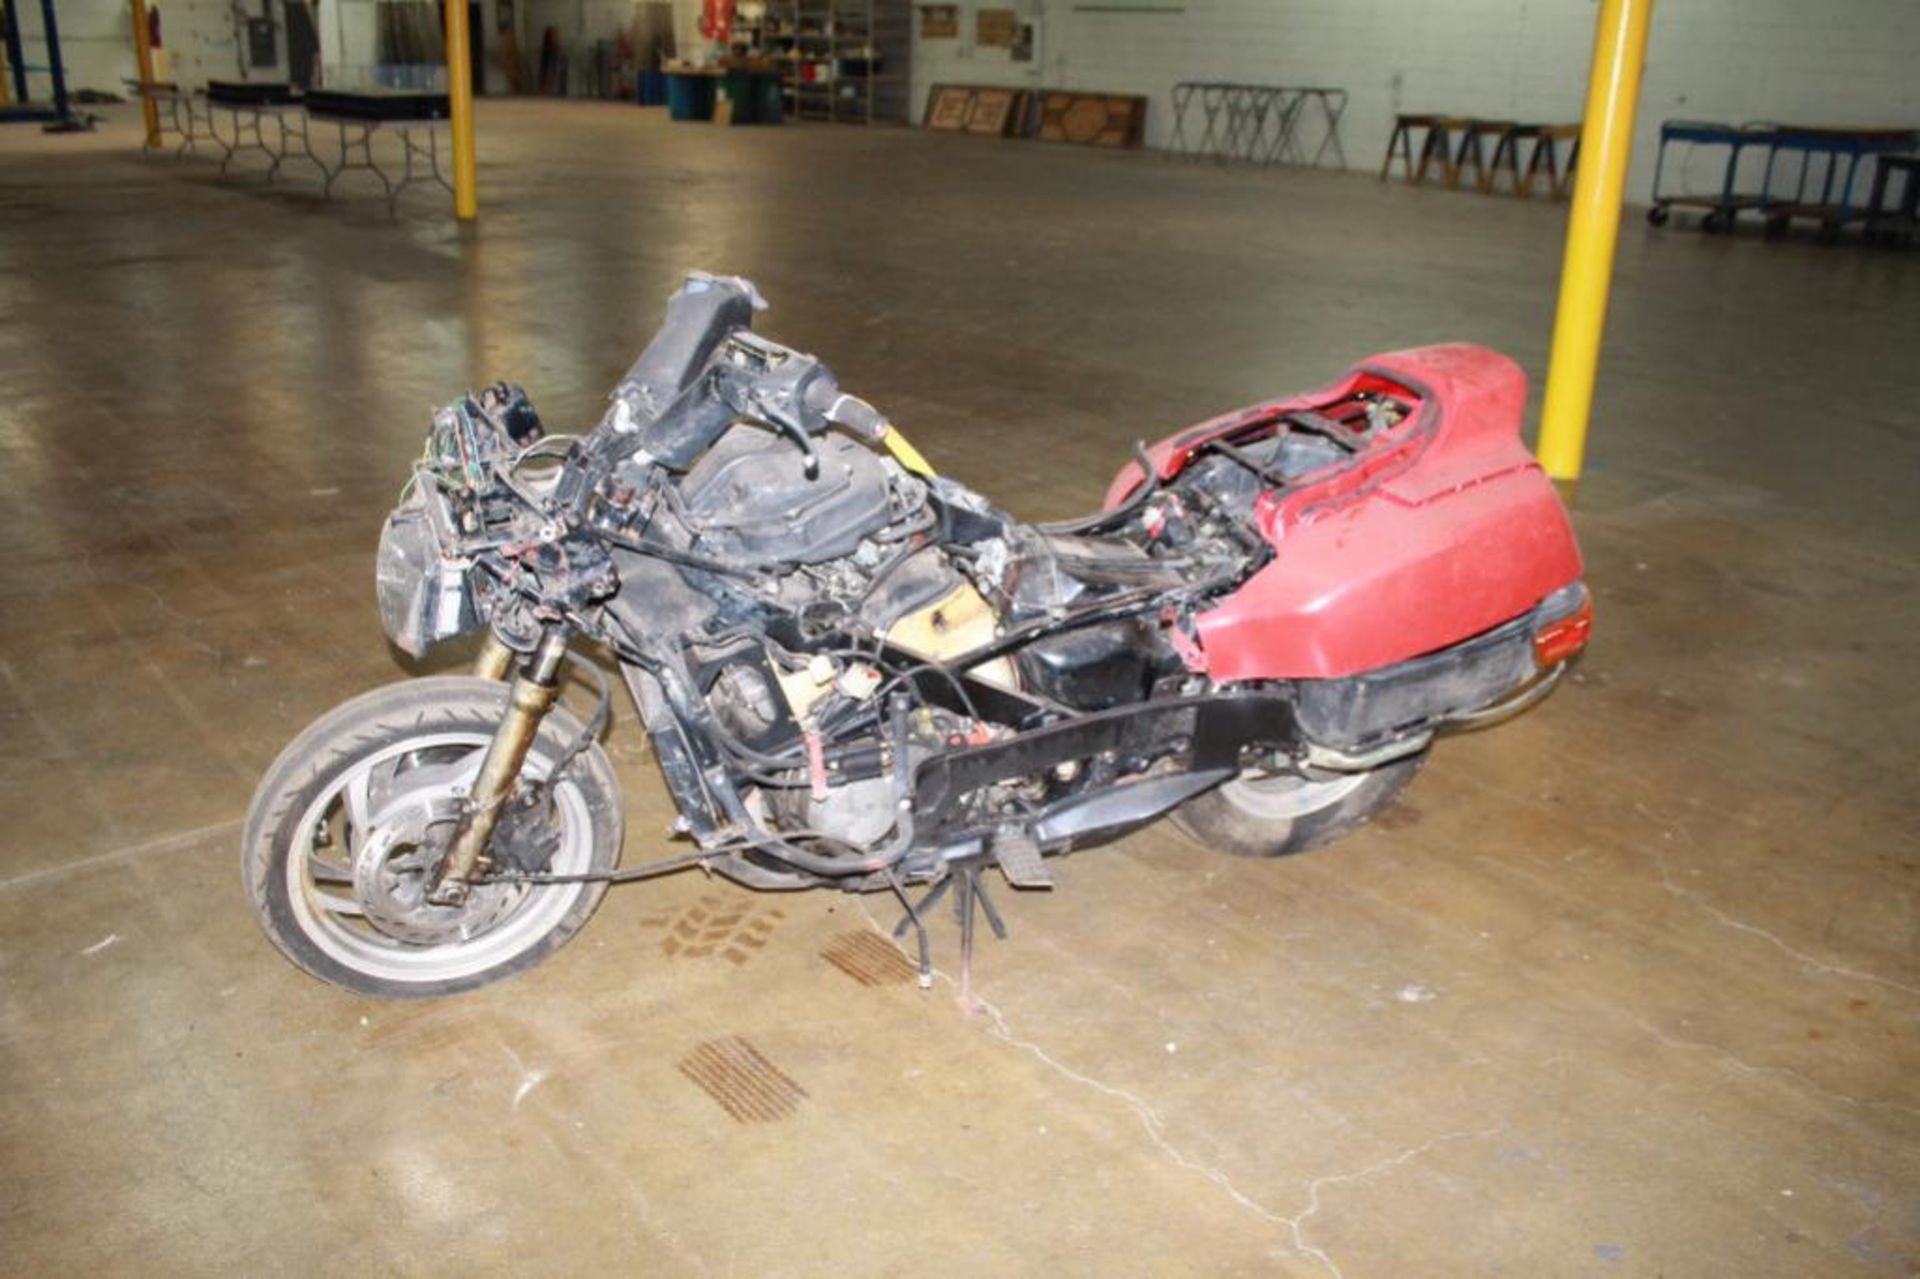 Honda Motorcycle (Partially Disassembled)